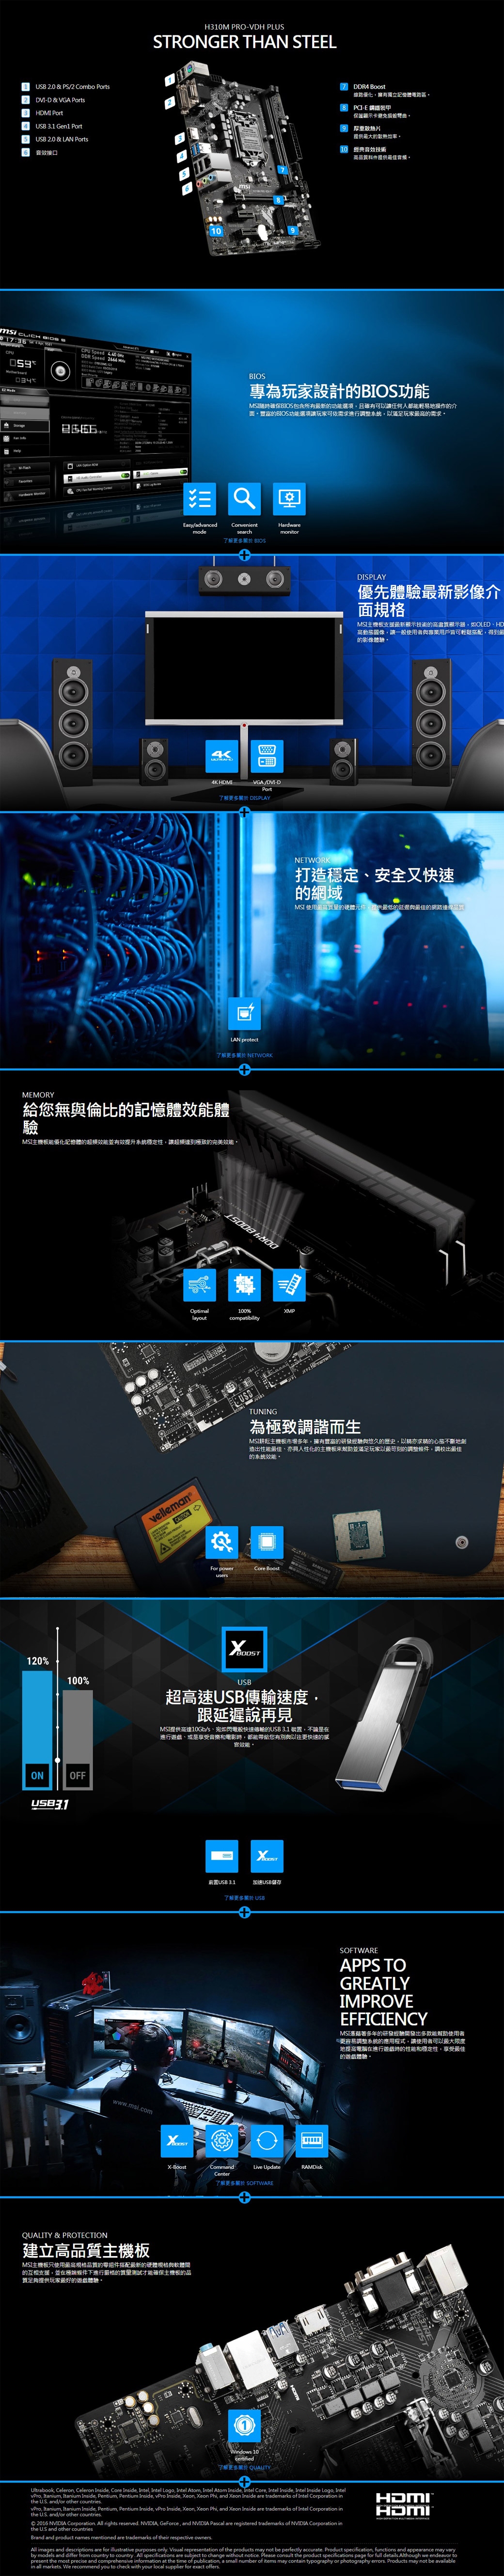 Intel i5-9400 + MSI H310M PRO-VDH PLUS 組合套餐